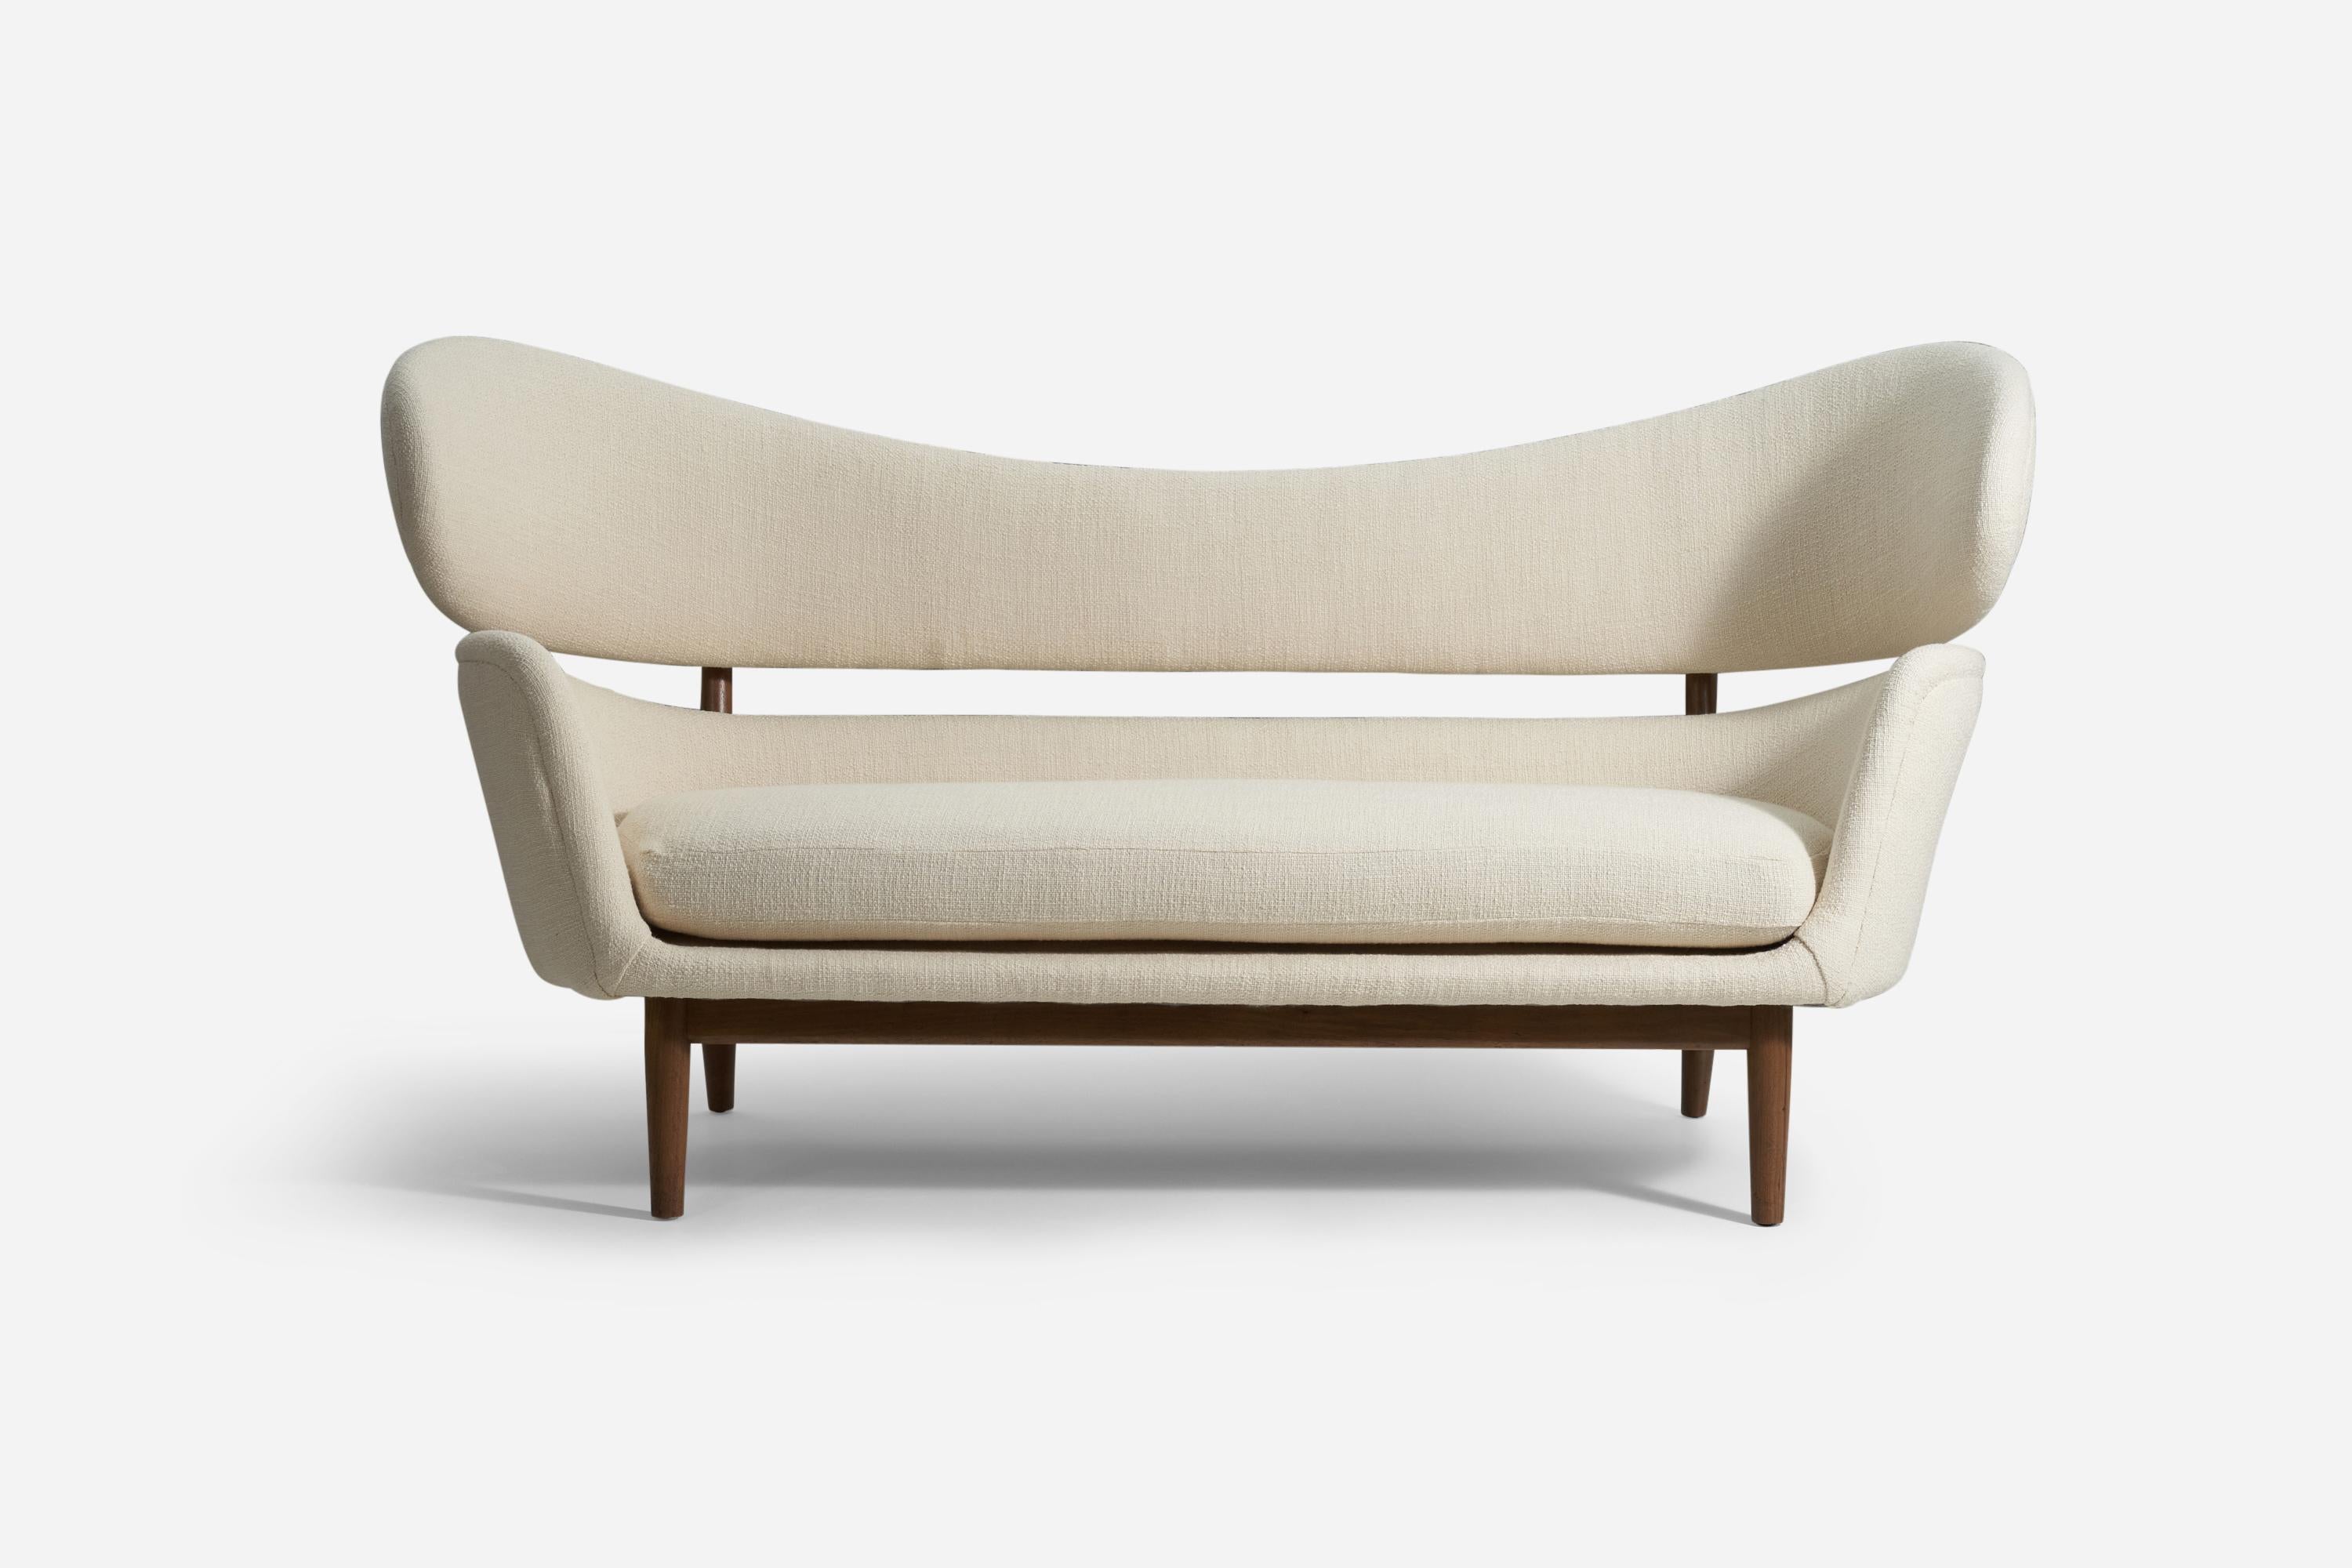 Ein seltenes und bedeutendes Sofa, entworfen von Finn Juhl 1951 für die Baker Furniture Company, Michigan. 

Edgar Kaufmann Jr., ein Kunstsammler und Leiter der Abteilung für Industriedesign am Museum of Modern Art in New York, stellte sie der